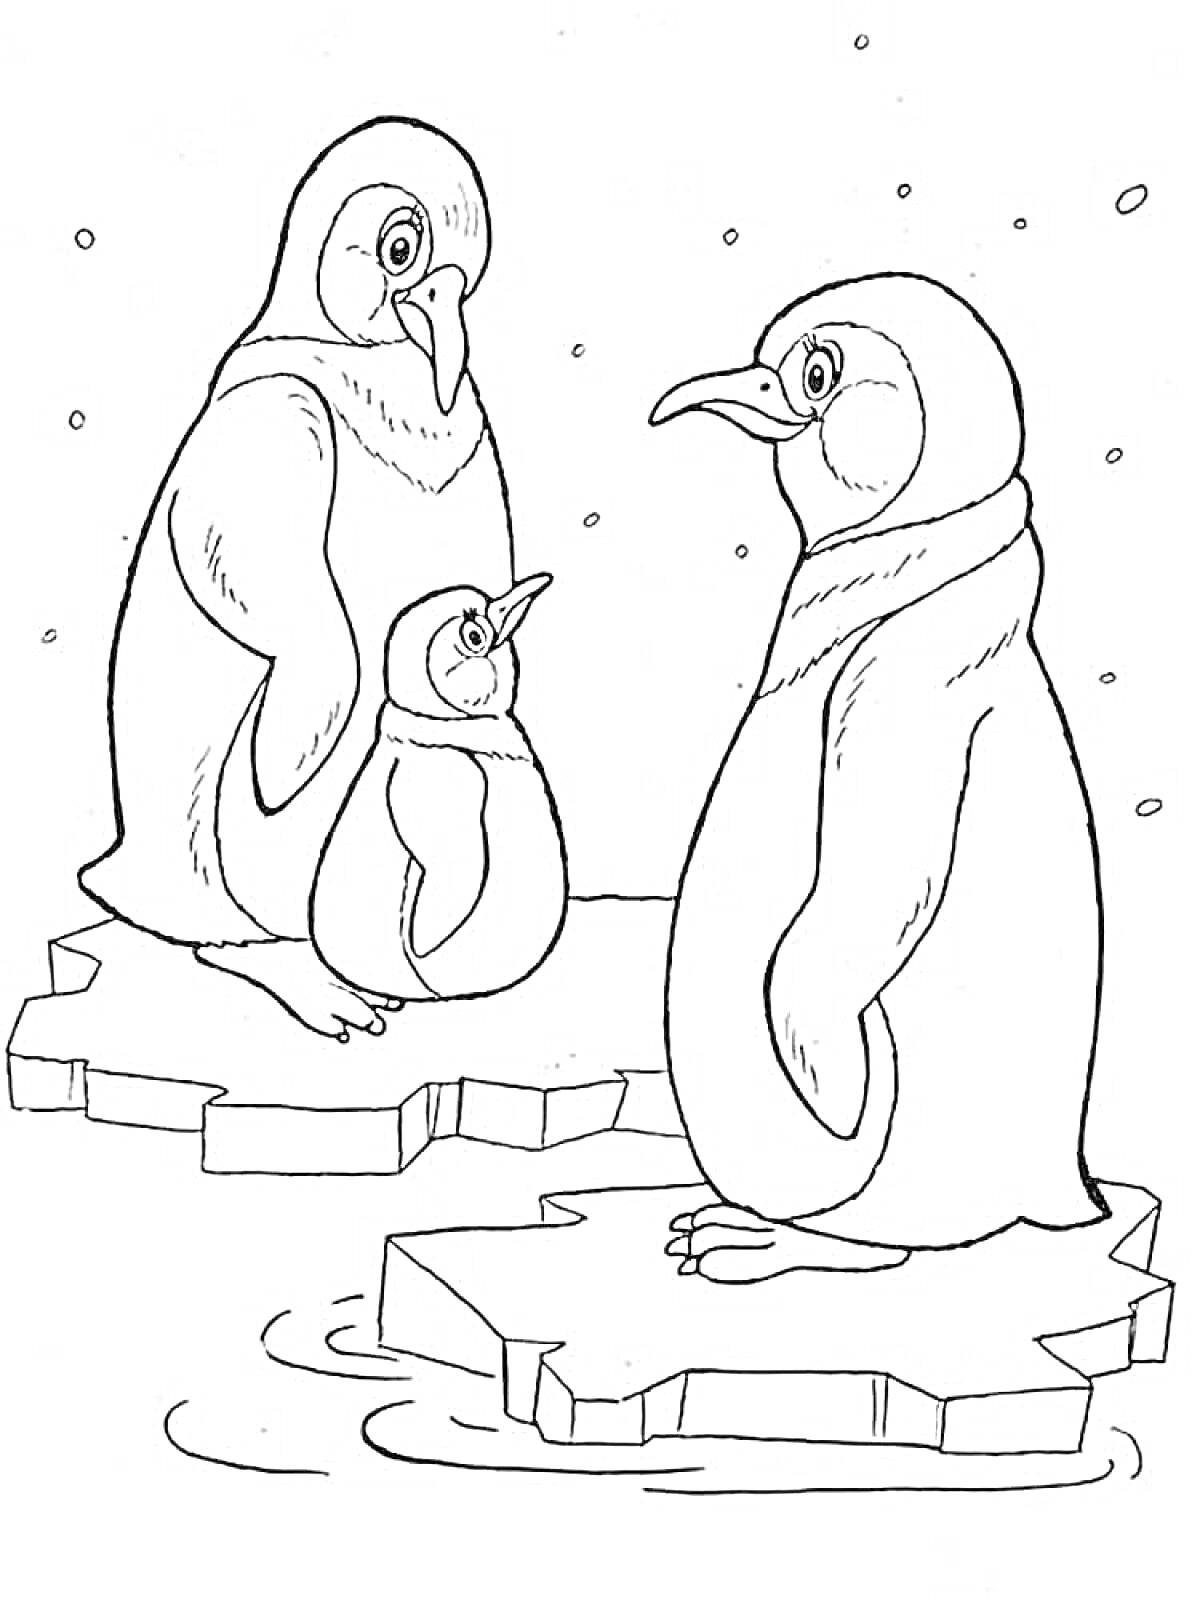 Раскраска Два взрослых пингвина и один пингвинёнок на льдинах в Антарктиде, падающий снег